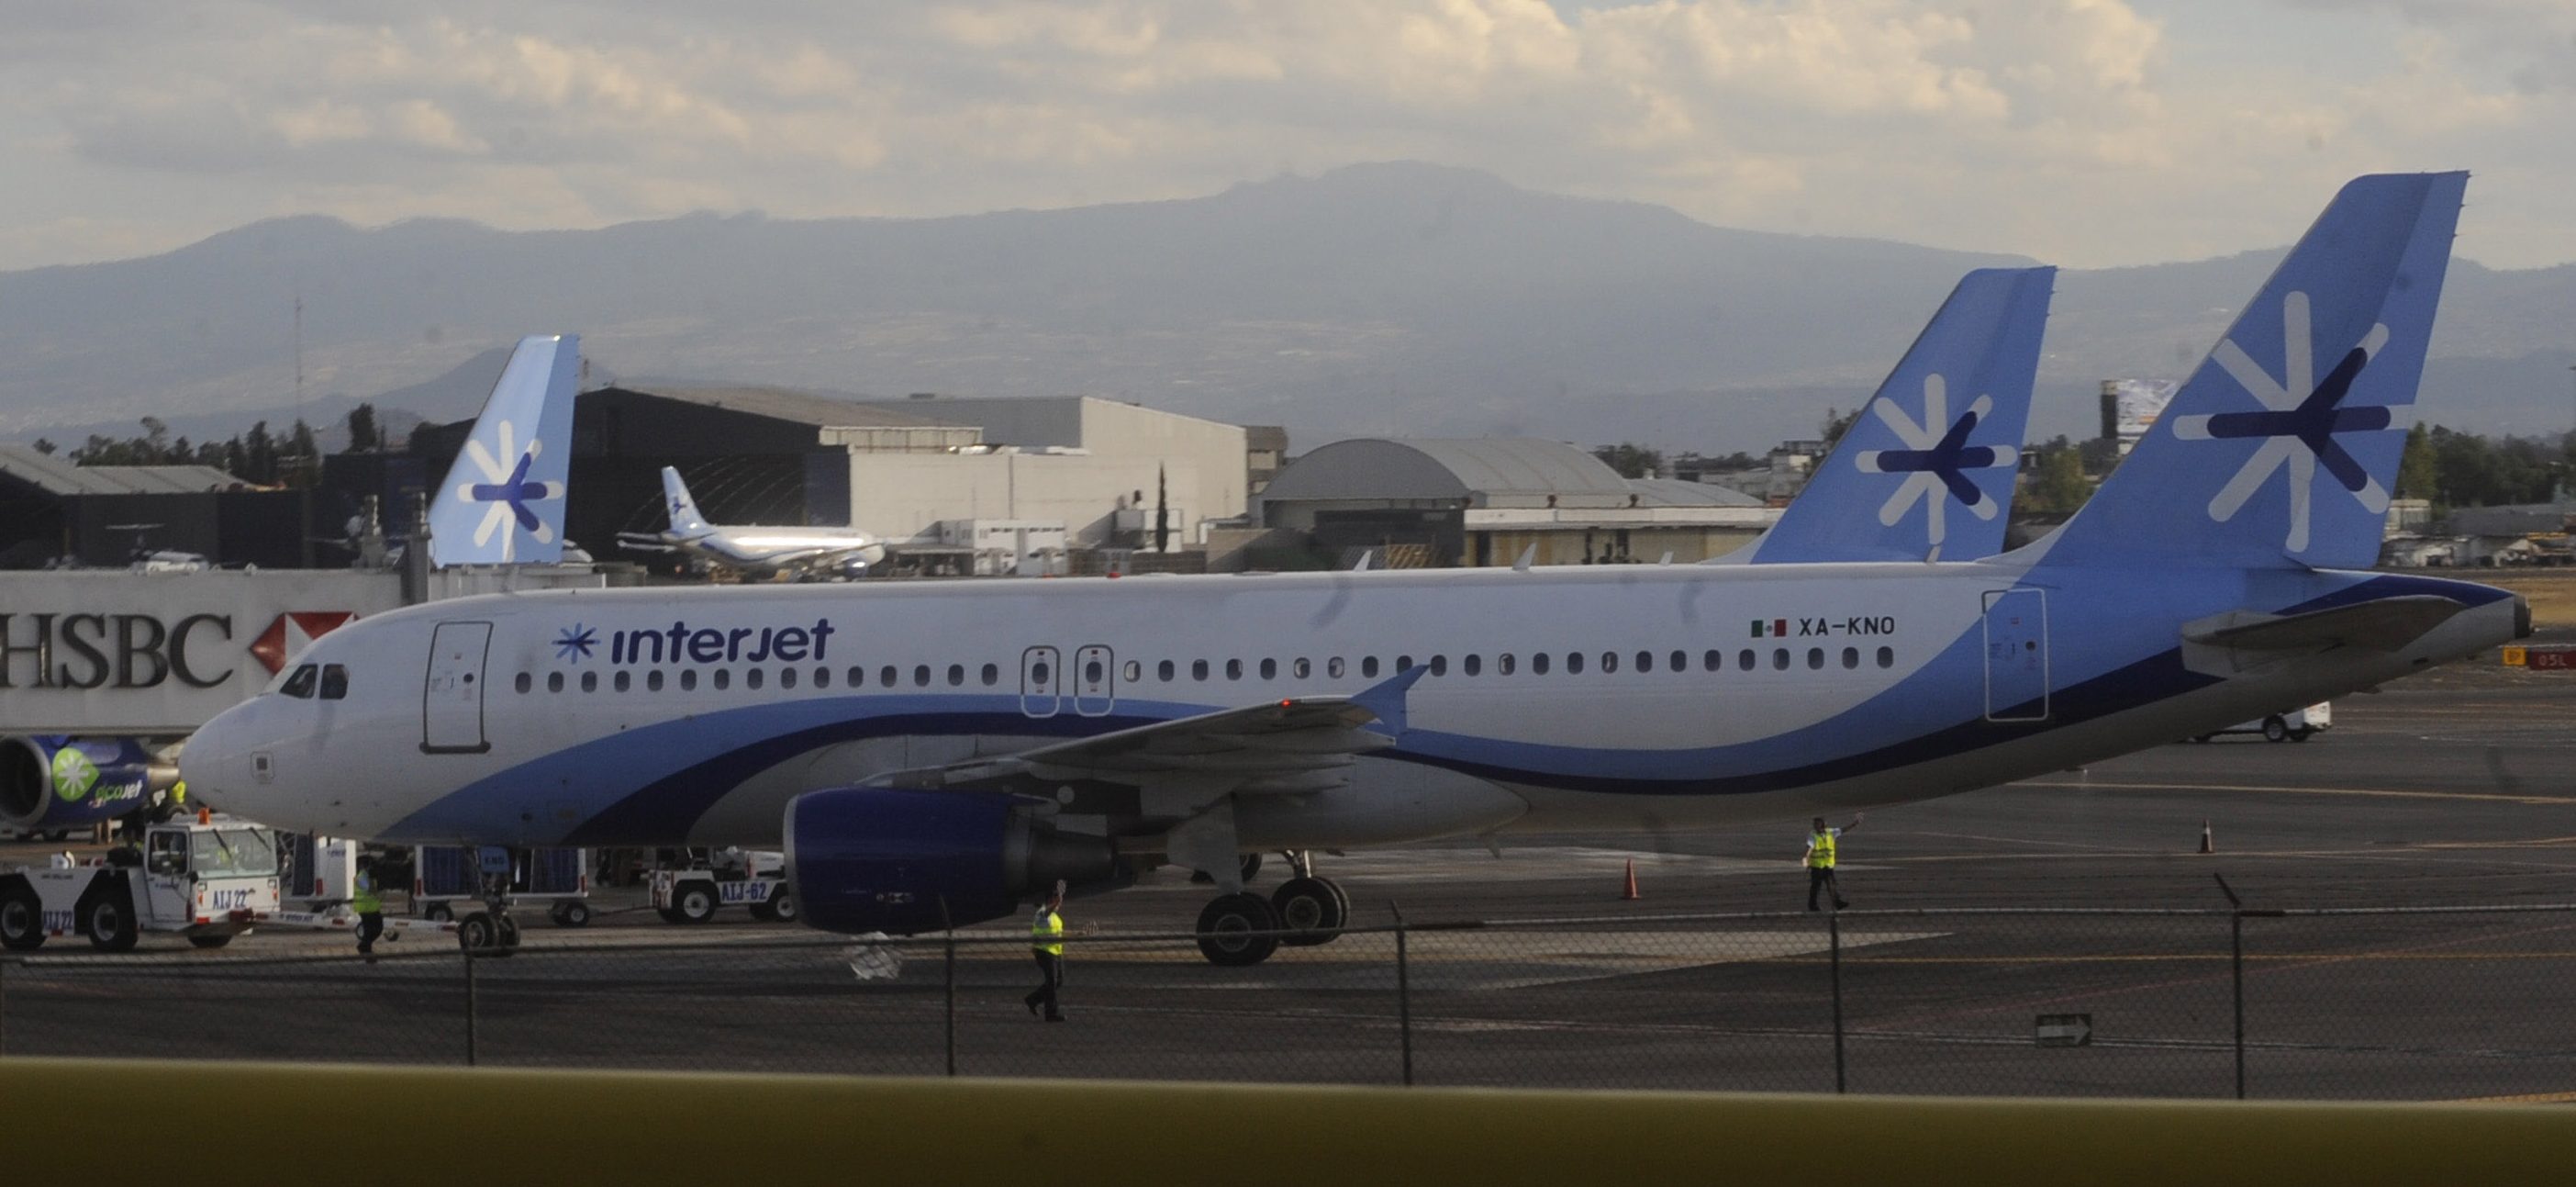 Interjet comienza a normalizar sus operaciones con vuelos extra